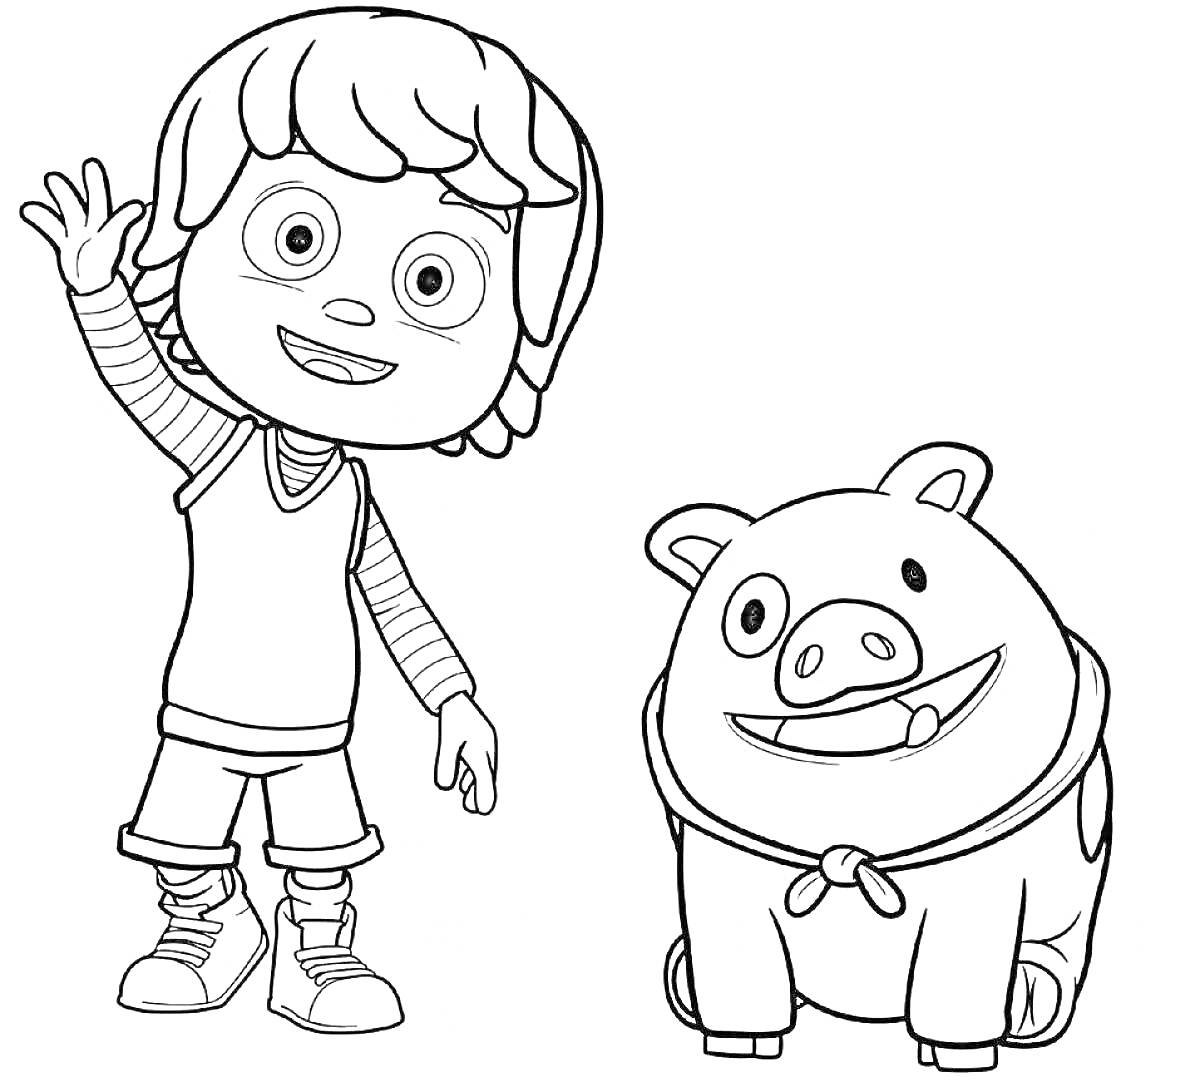 Раскраска Мальчик в полосатой футболке и шортах с рукой вверх, рядом веселая свинка с повязкой на шее